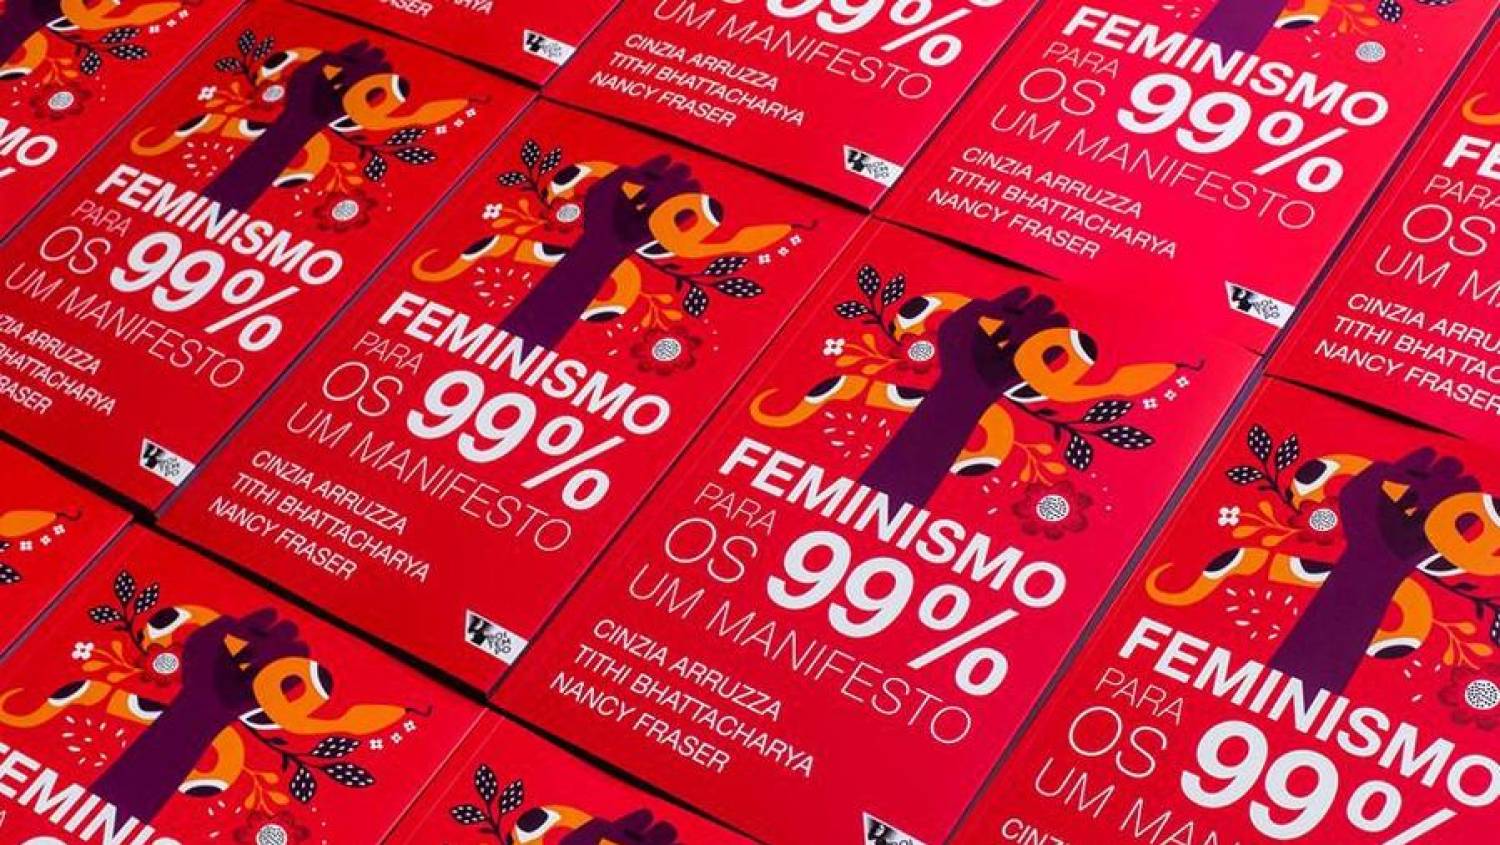 Feminismo para os 99%: lançamento do livro em Santos